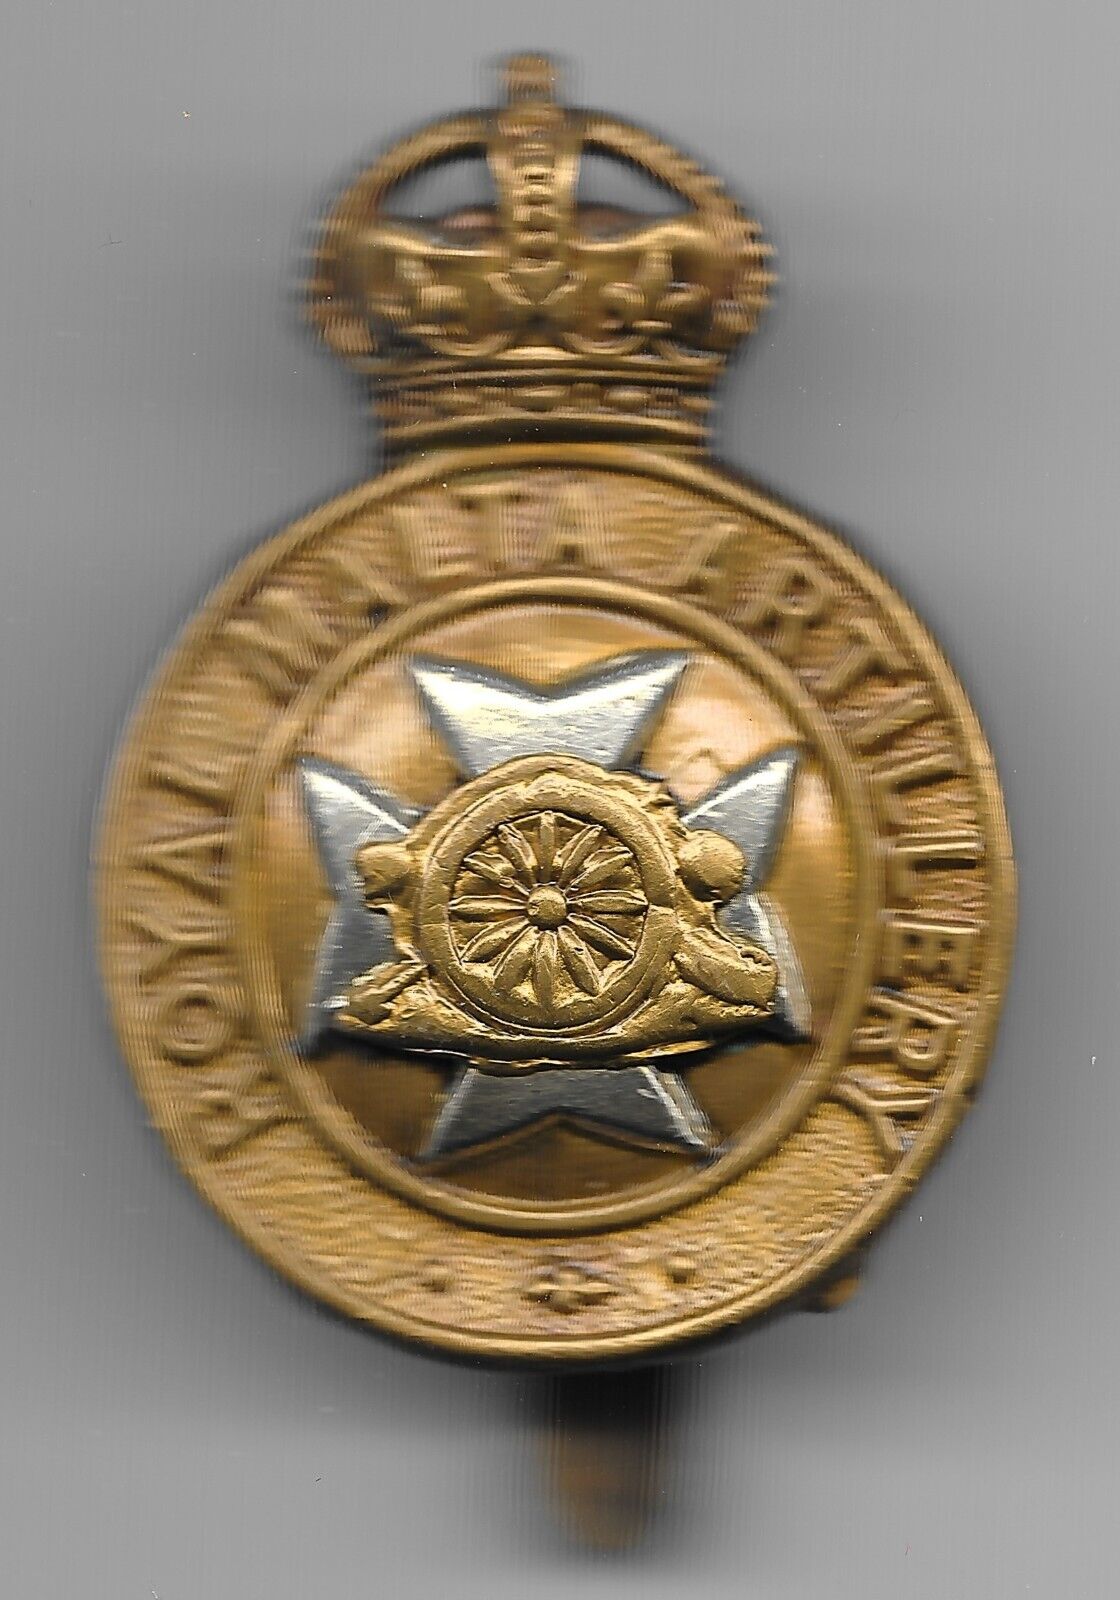 Original Royal Malta Artillery Bi-metal Cap Badge from the period 1904-1938